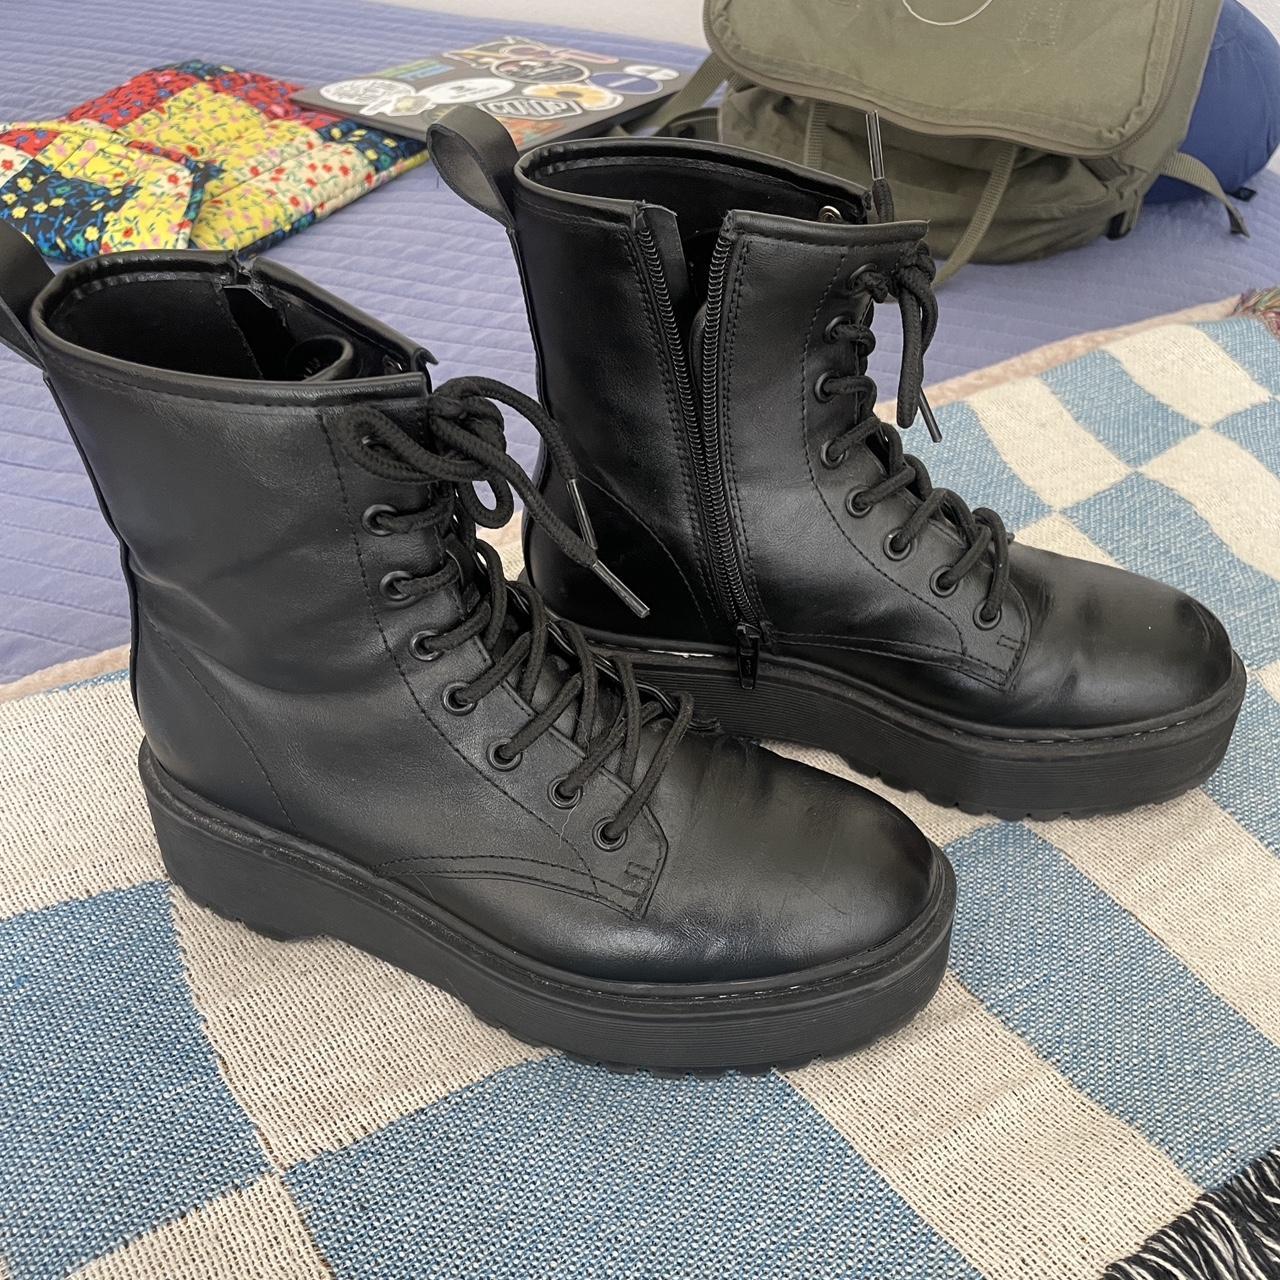 Doc marten look alike boots - Depop